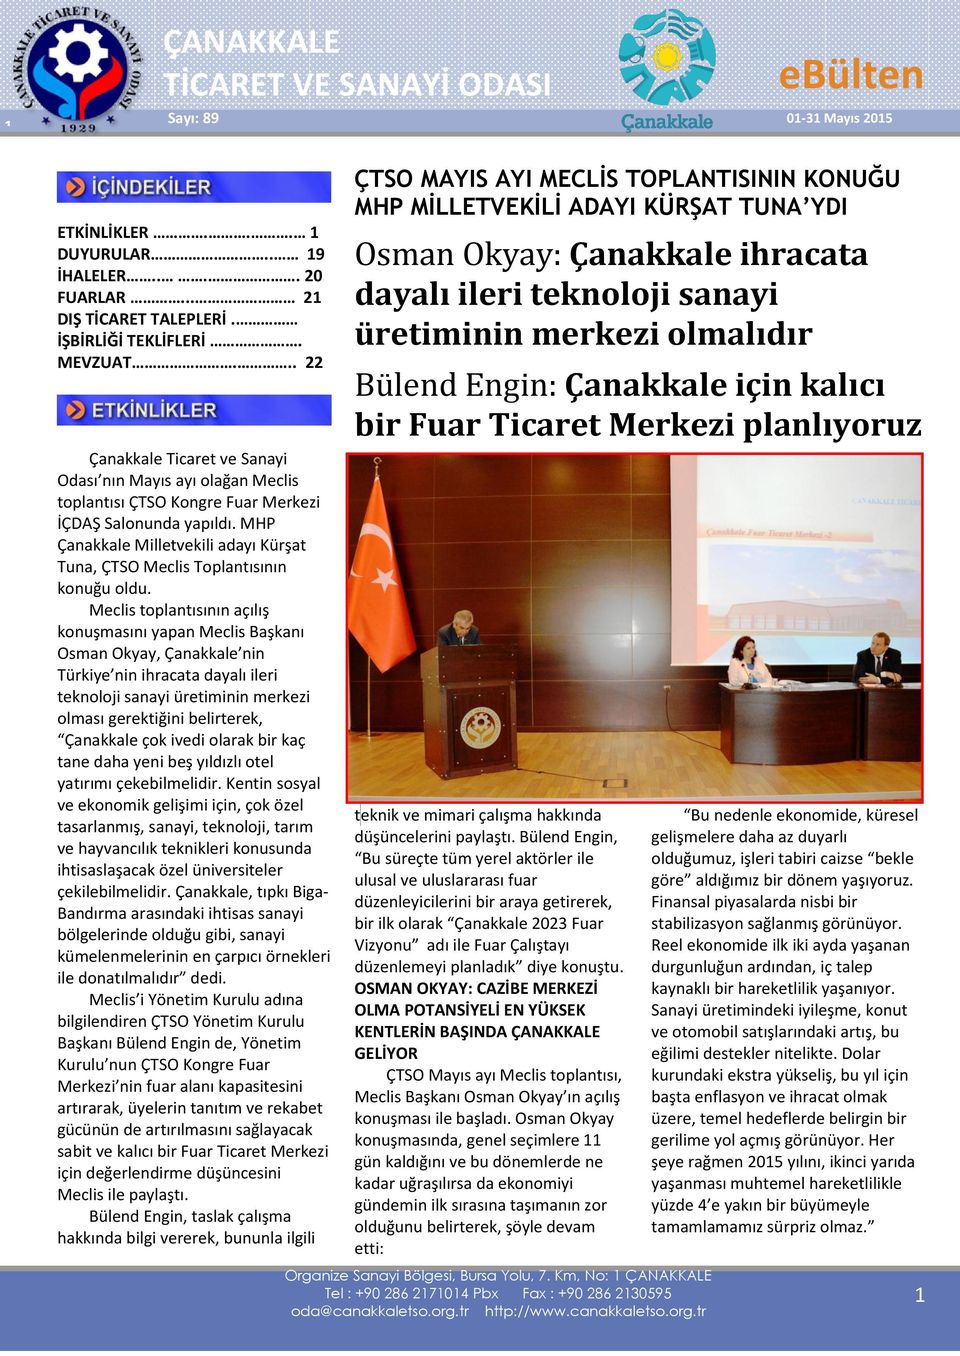 MHP Çanakkale Milletvekili adayı Kürşat Tuna, ÇTSO Meclis Toplantısının konuğu oldu.